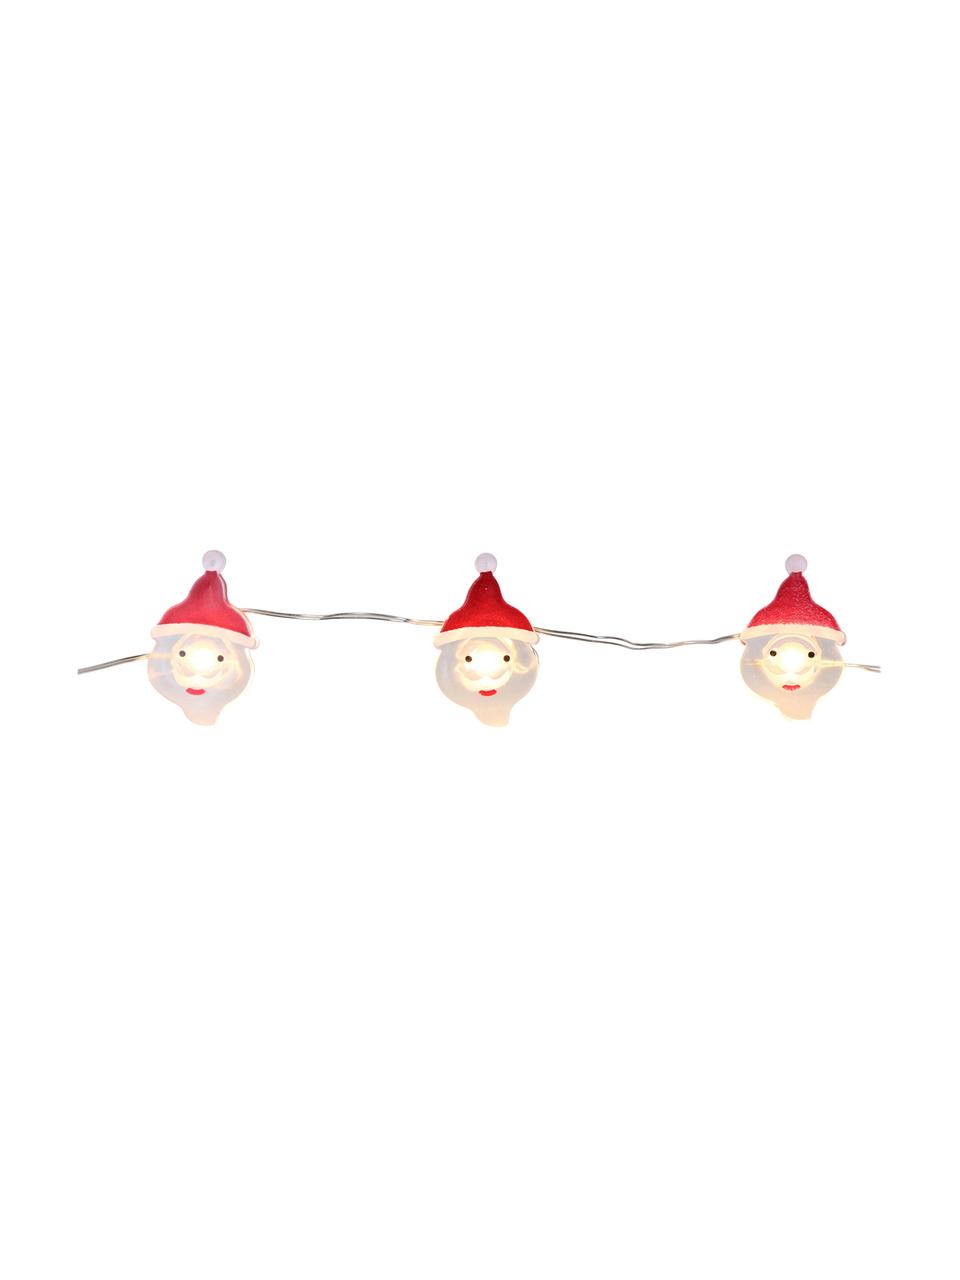 Girlanda świetlna LED Santa Claus, Metalowy drut, szkło akrylowe, metal, tworzywo sztuczne, Biały, czerwony, D 220 cm